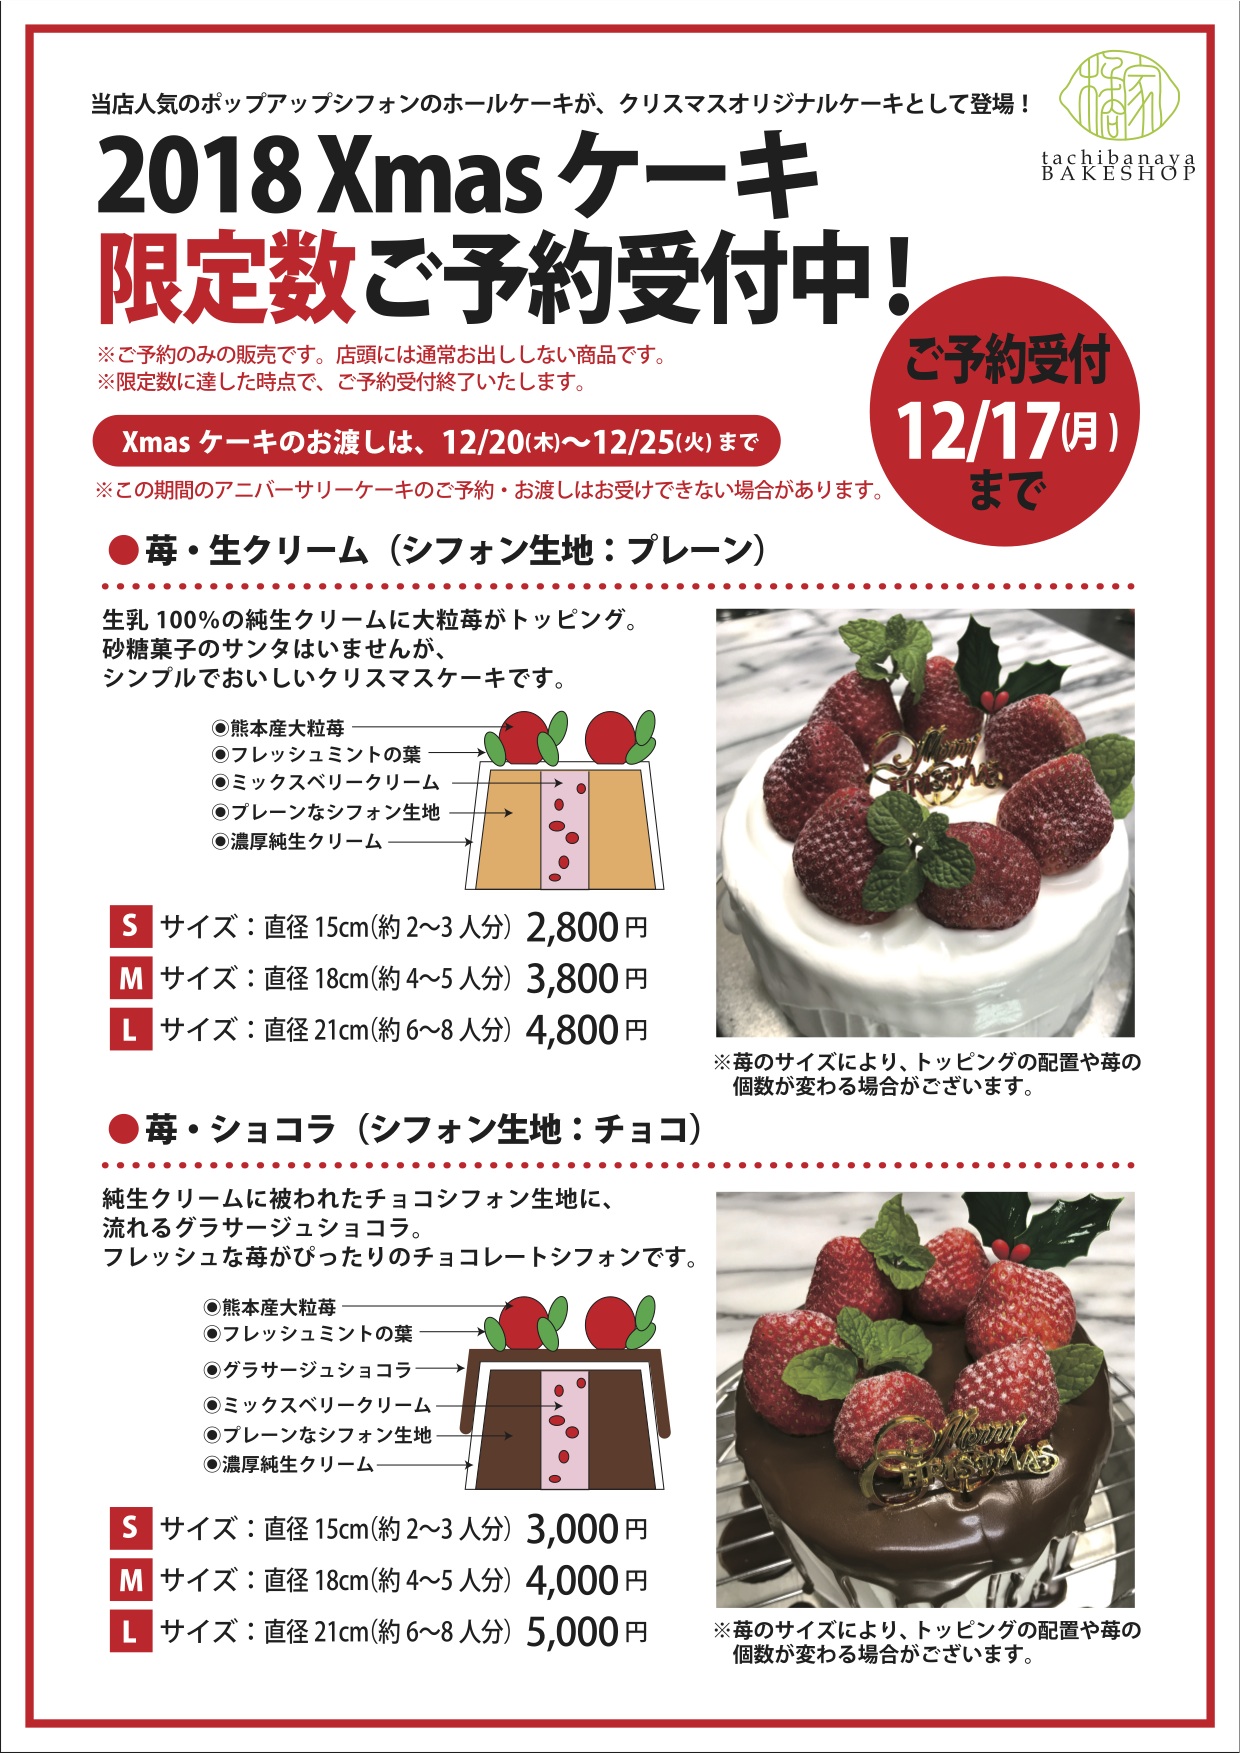 18年クリスマスケーキ 橘家ベイクショップ 熊本の焼菓子と珈琲の店